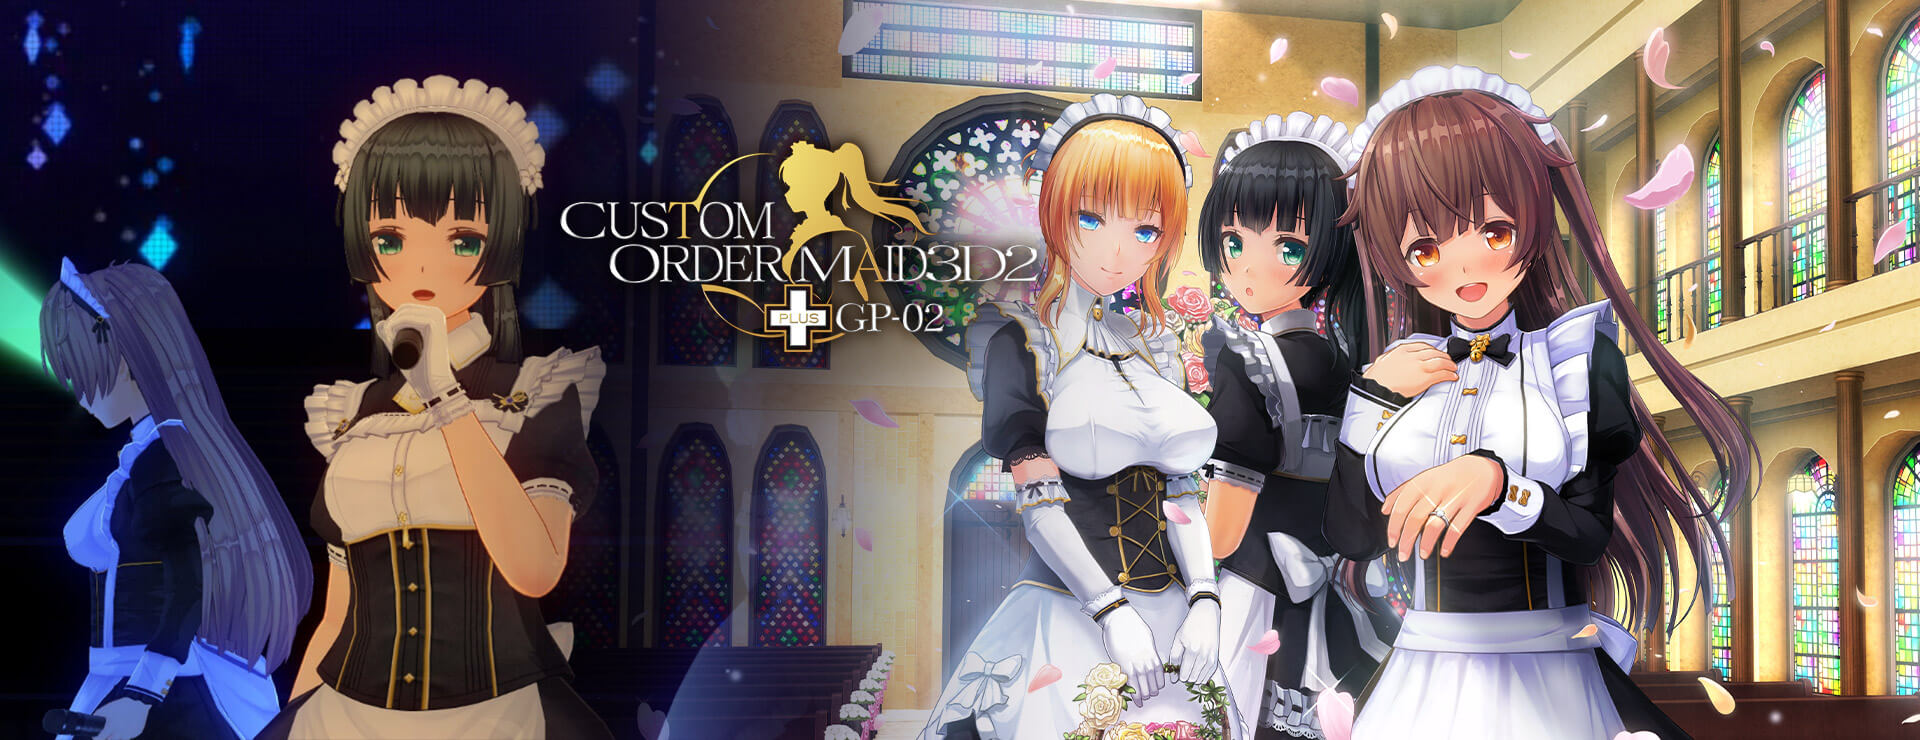 Custom Order Maid 3D2 GP 02 (DLC) - シミュレーション ゲーム